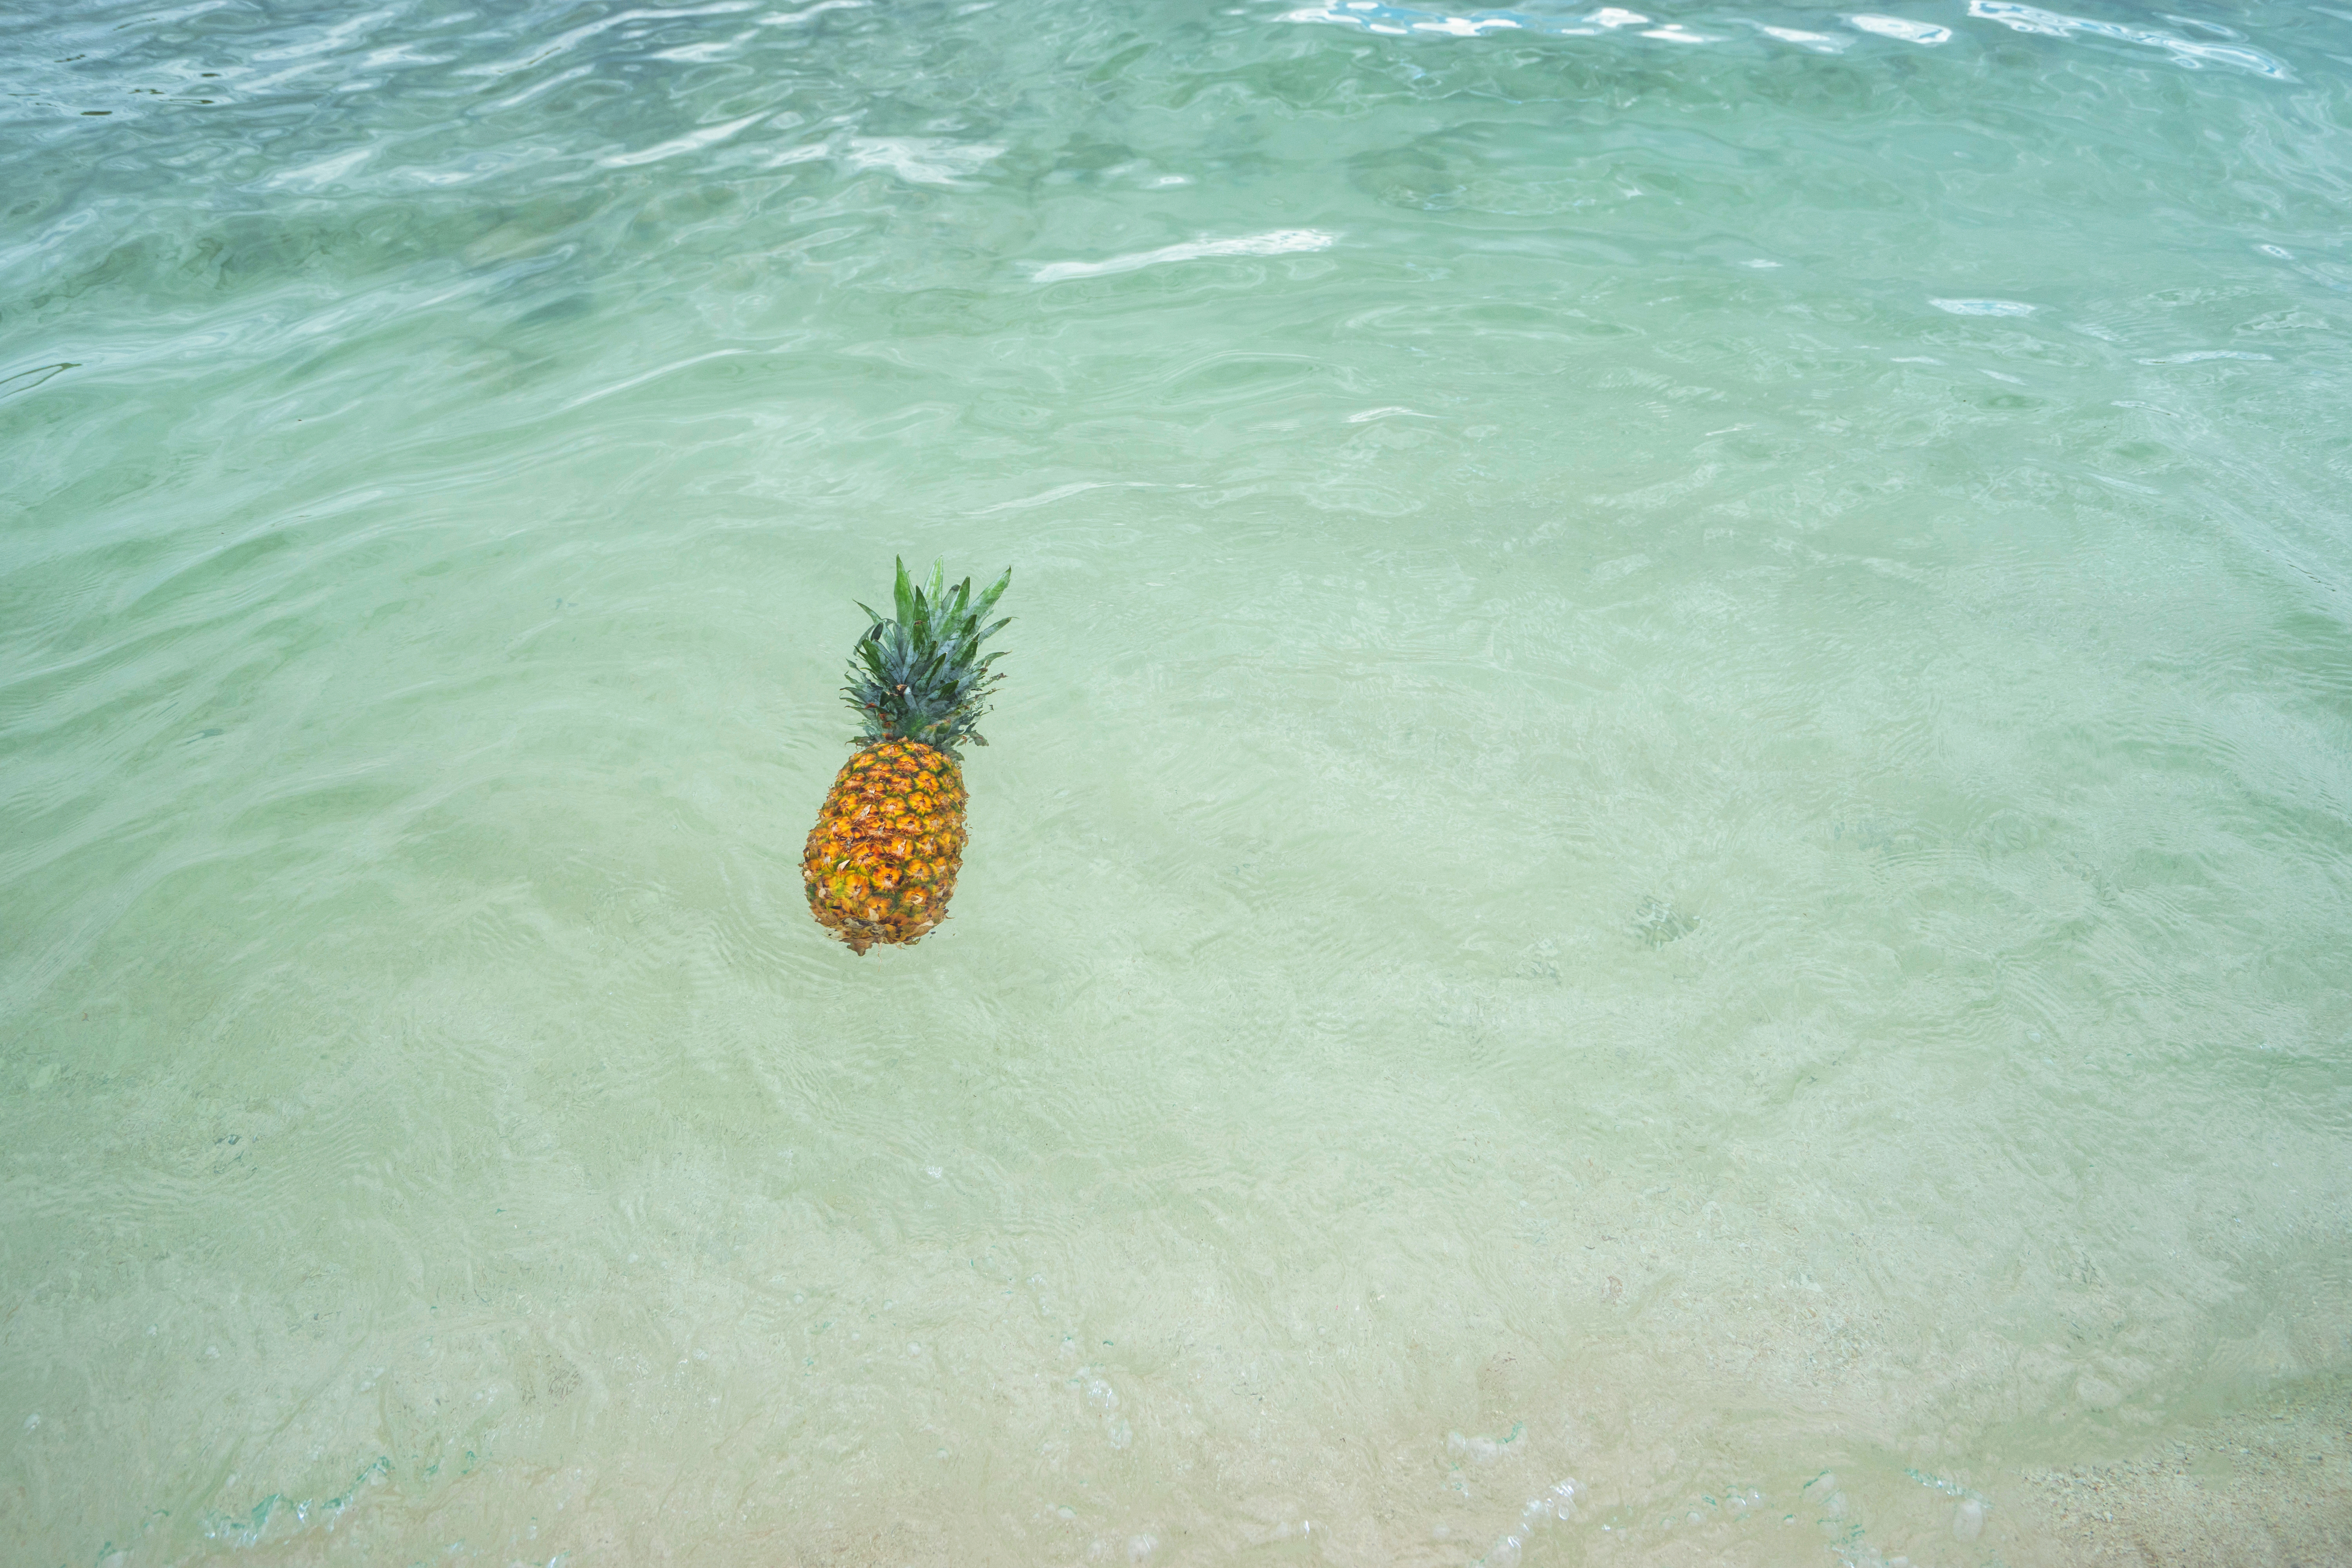 pineapple floating in the ocean